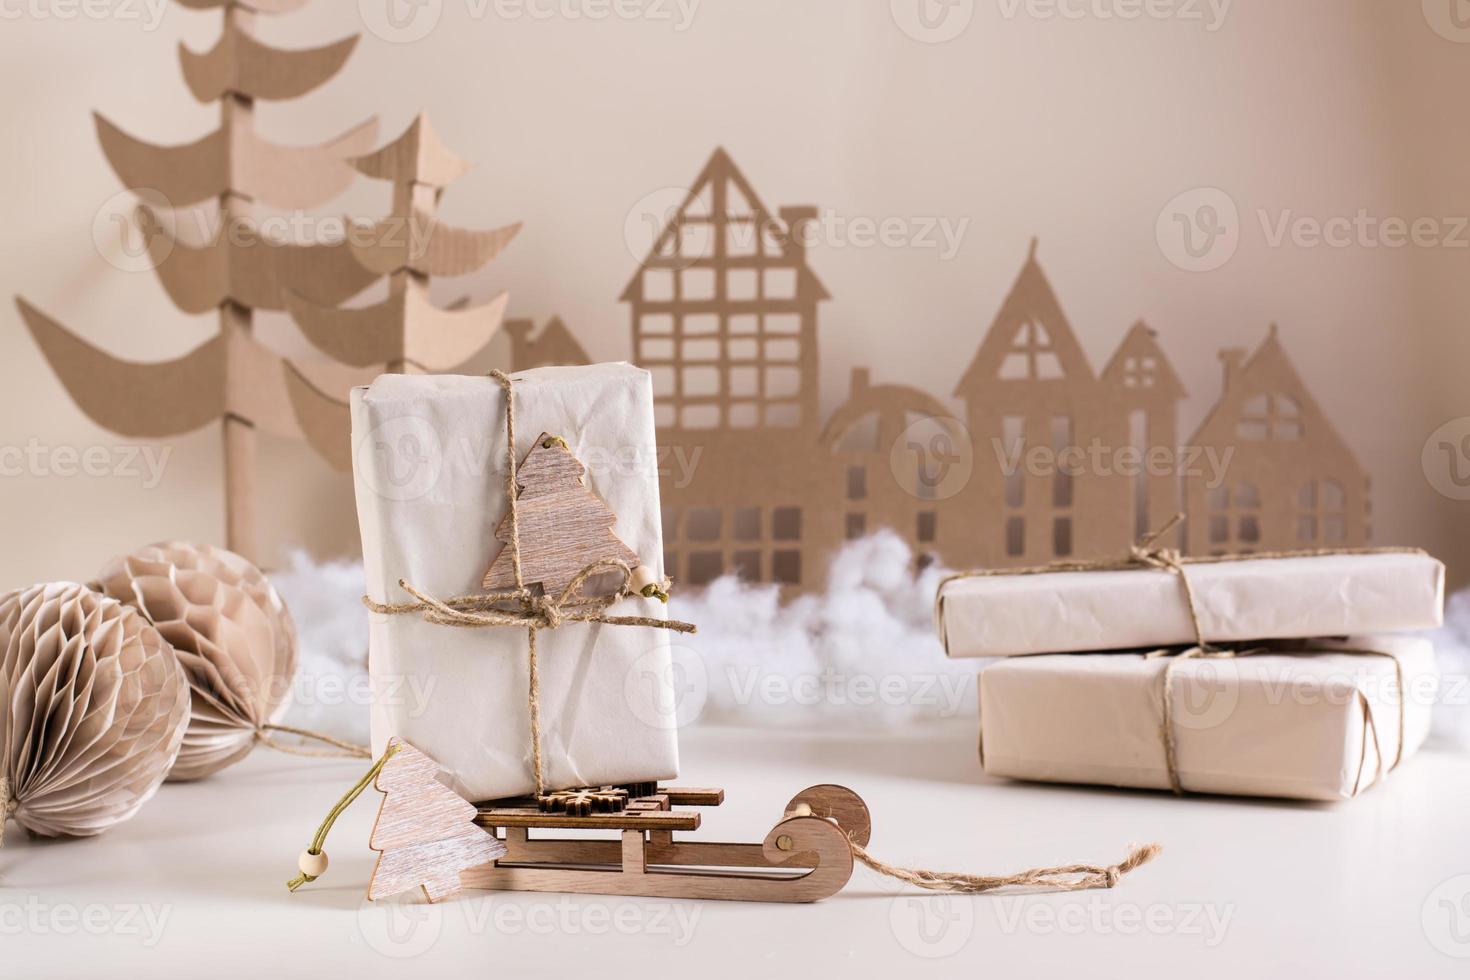 decoración casera navideña de bricolaje: regalo en papel artesanal en un trineo, árbol de cartón y casa. hecho a mano foto